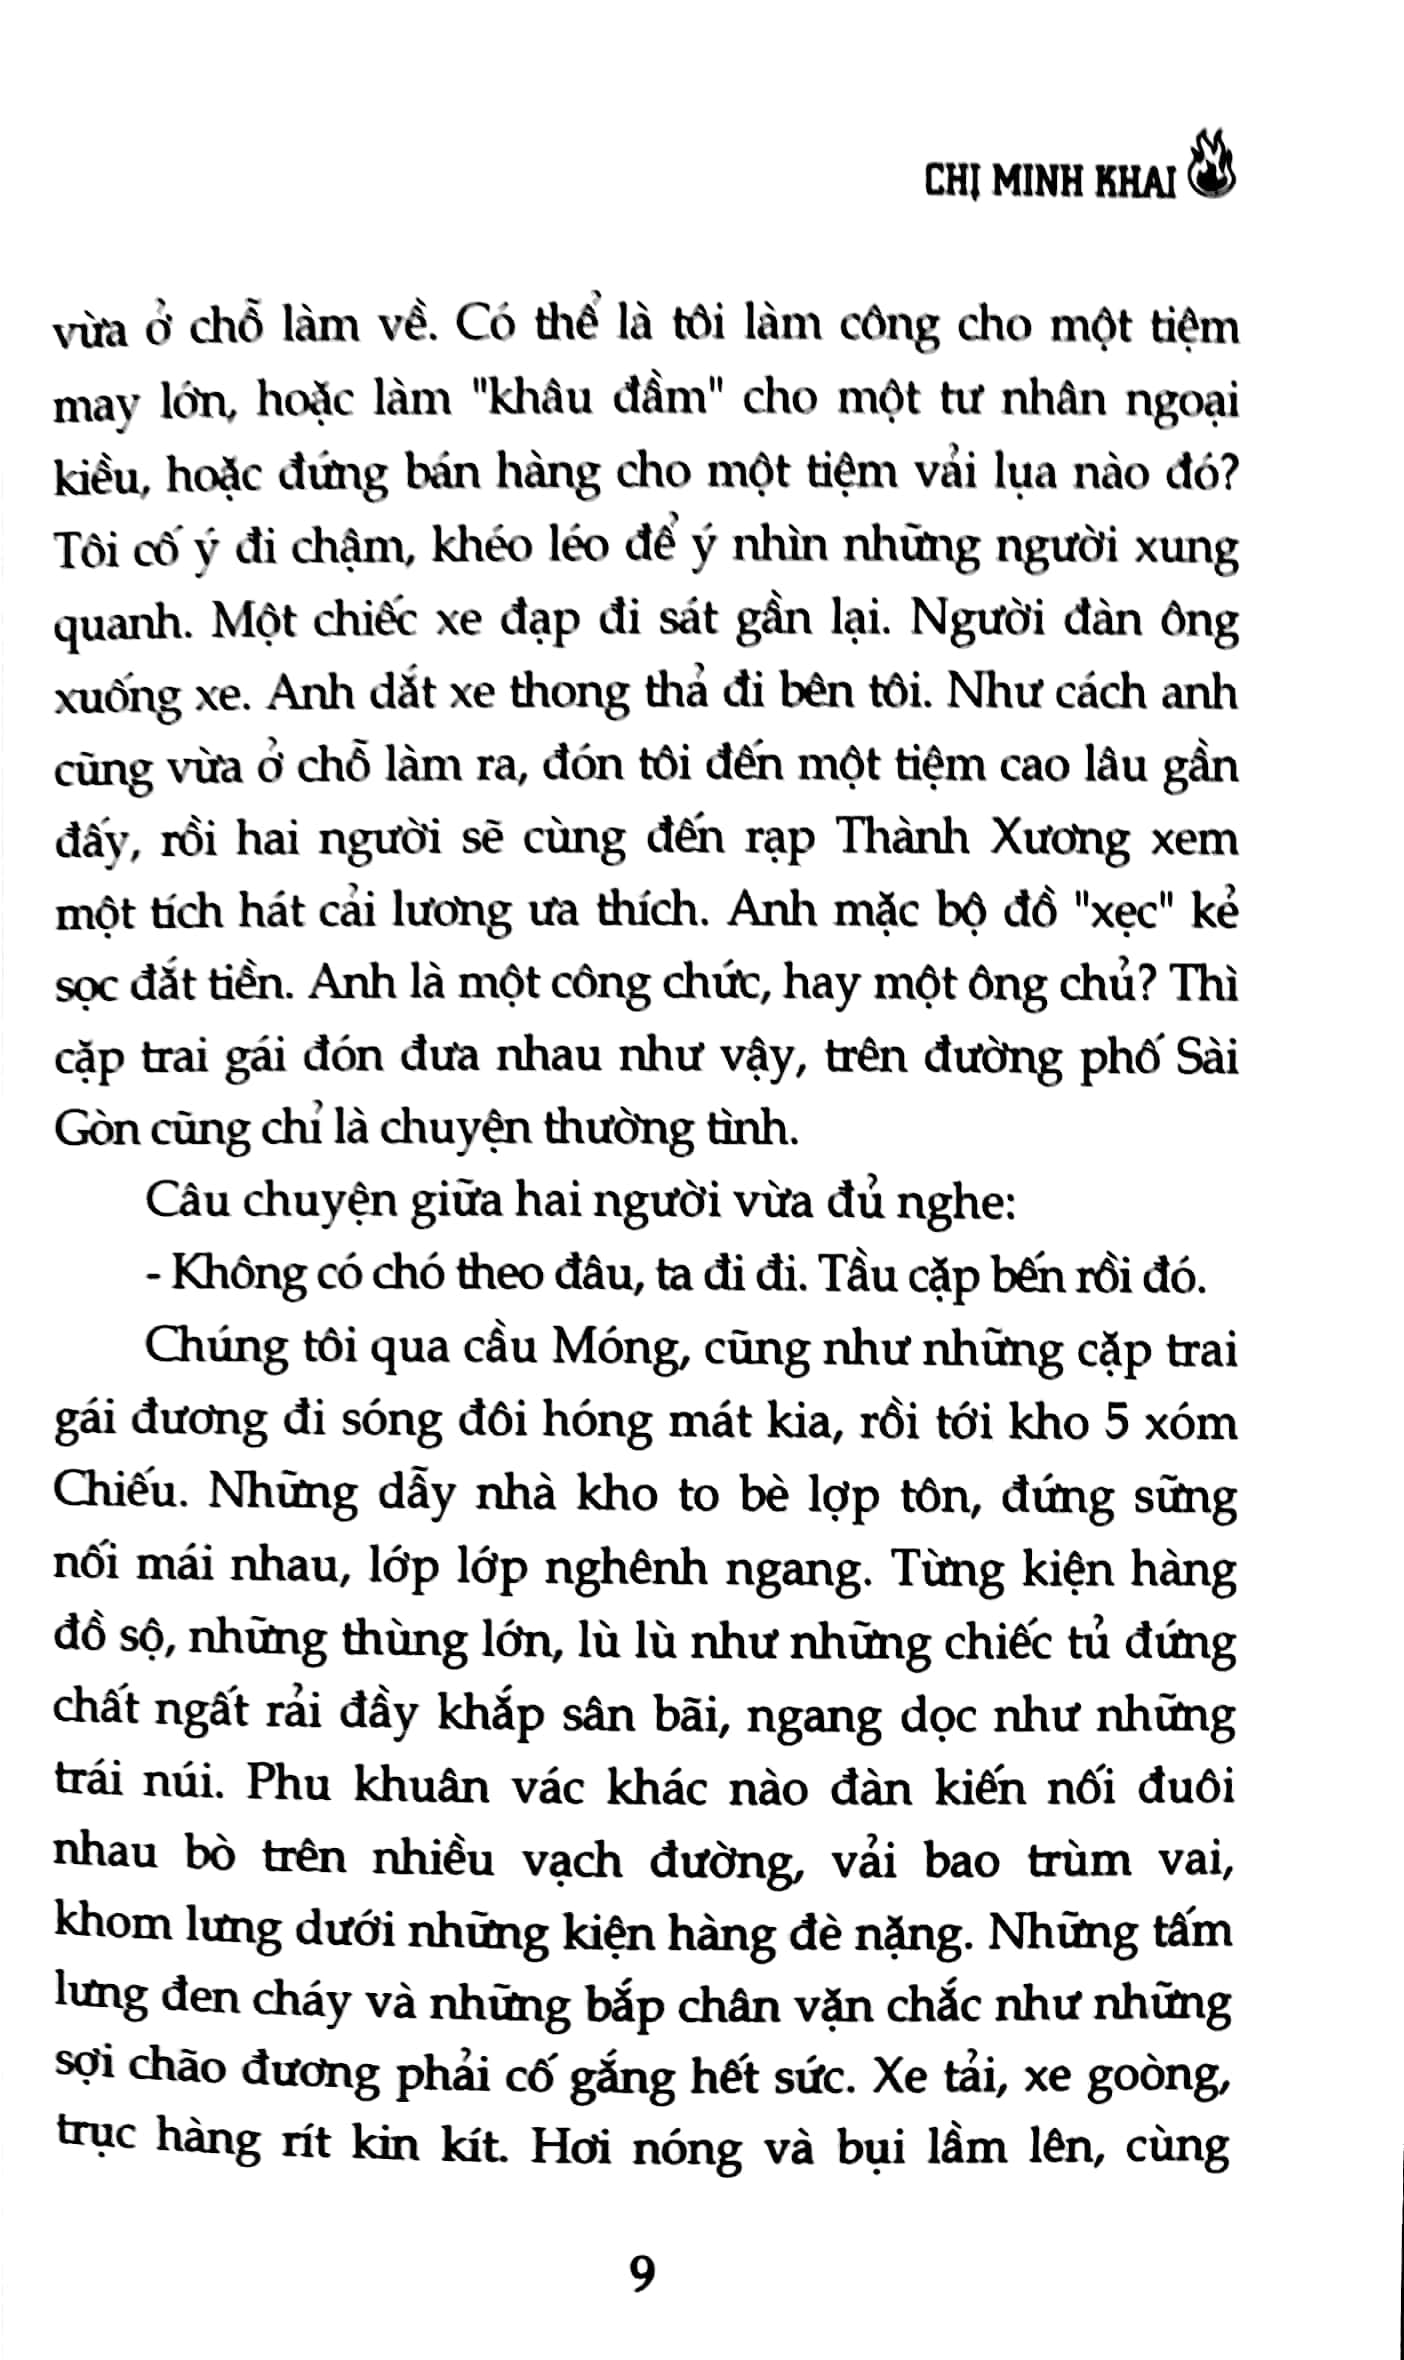 Tấm Gương Tuổi Trẻ Việt Nam - Chị Minh Khai